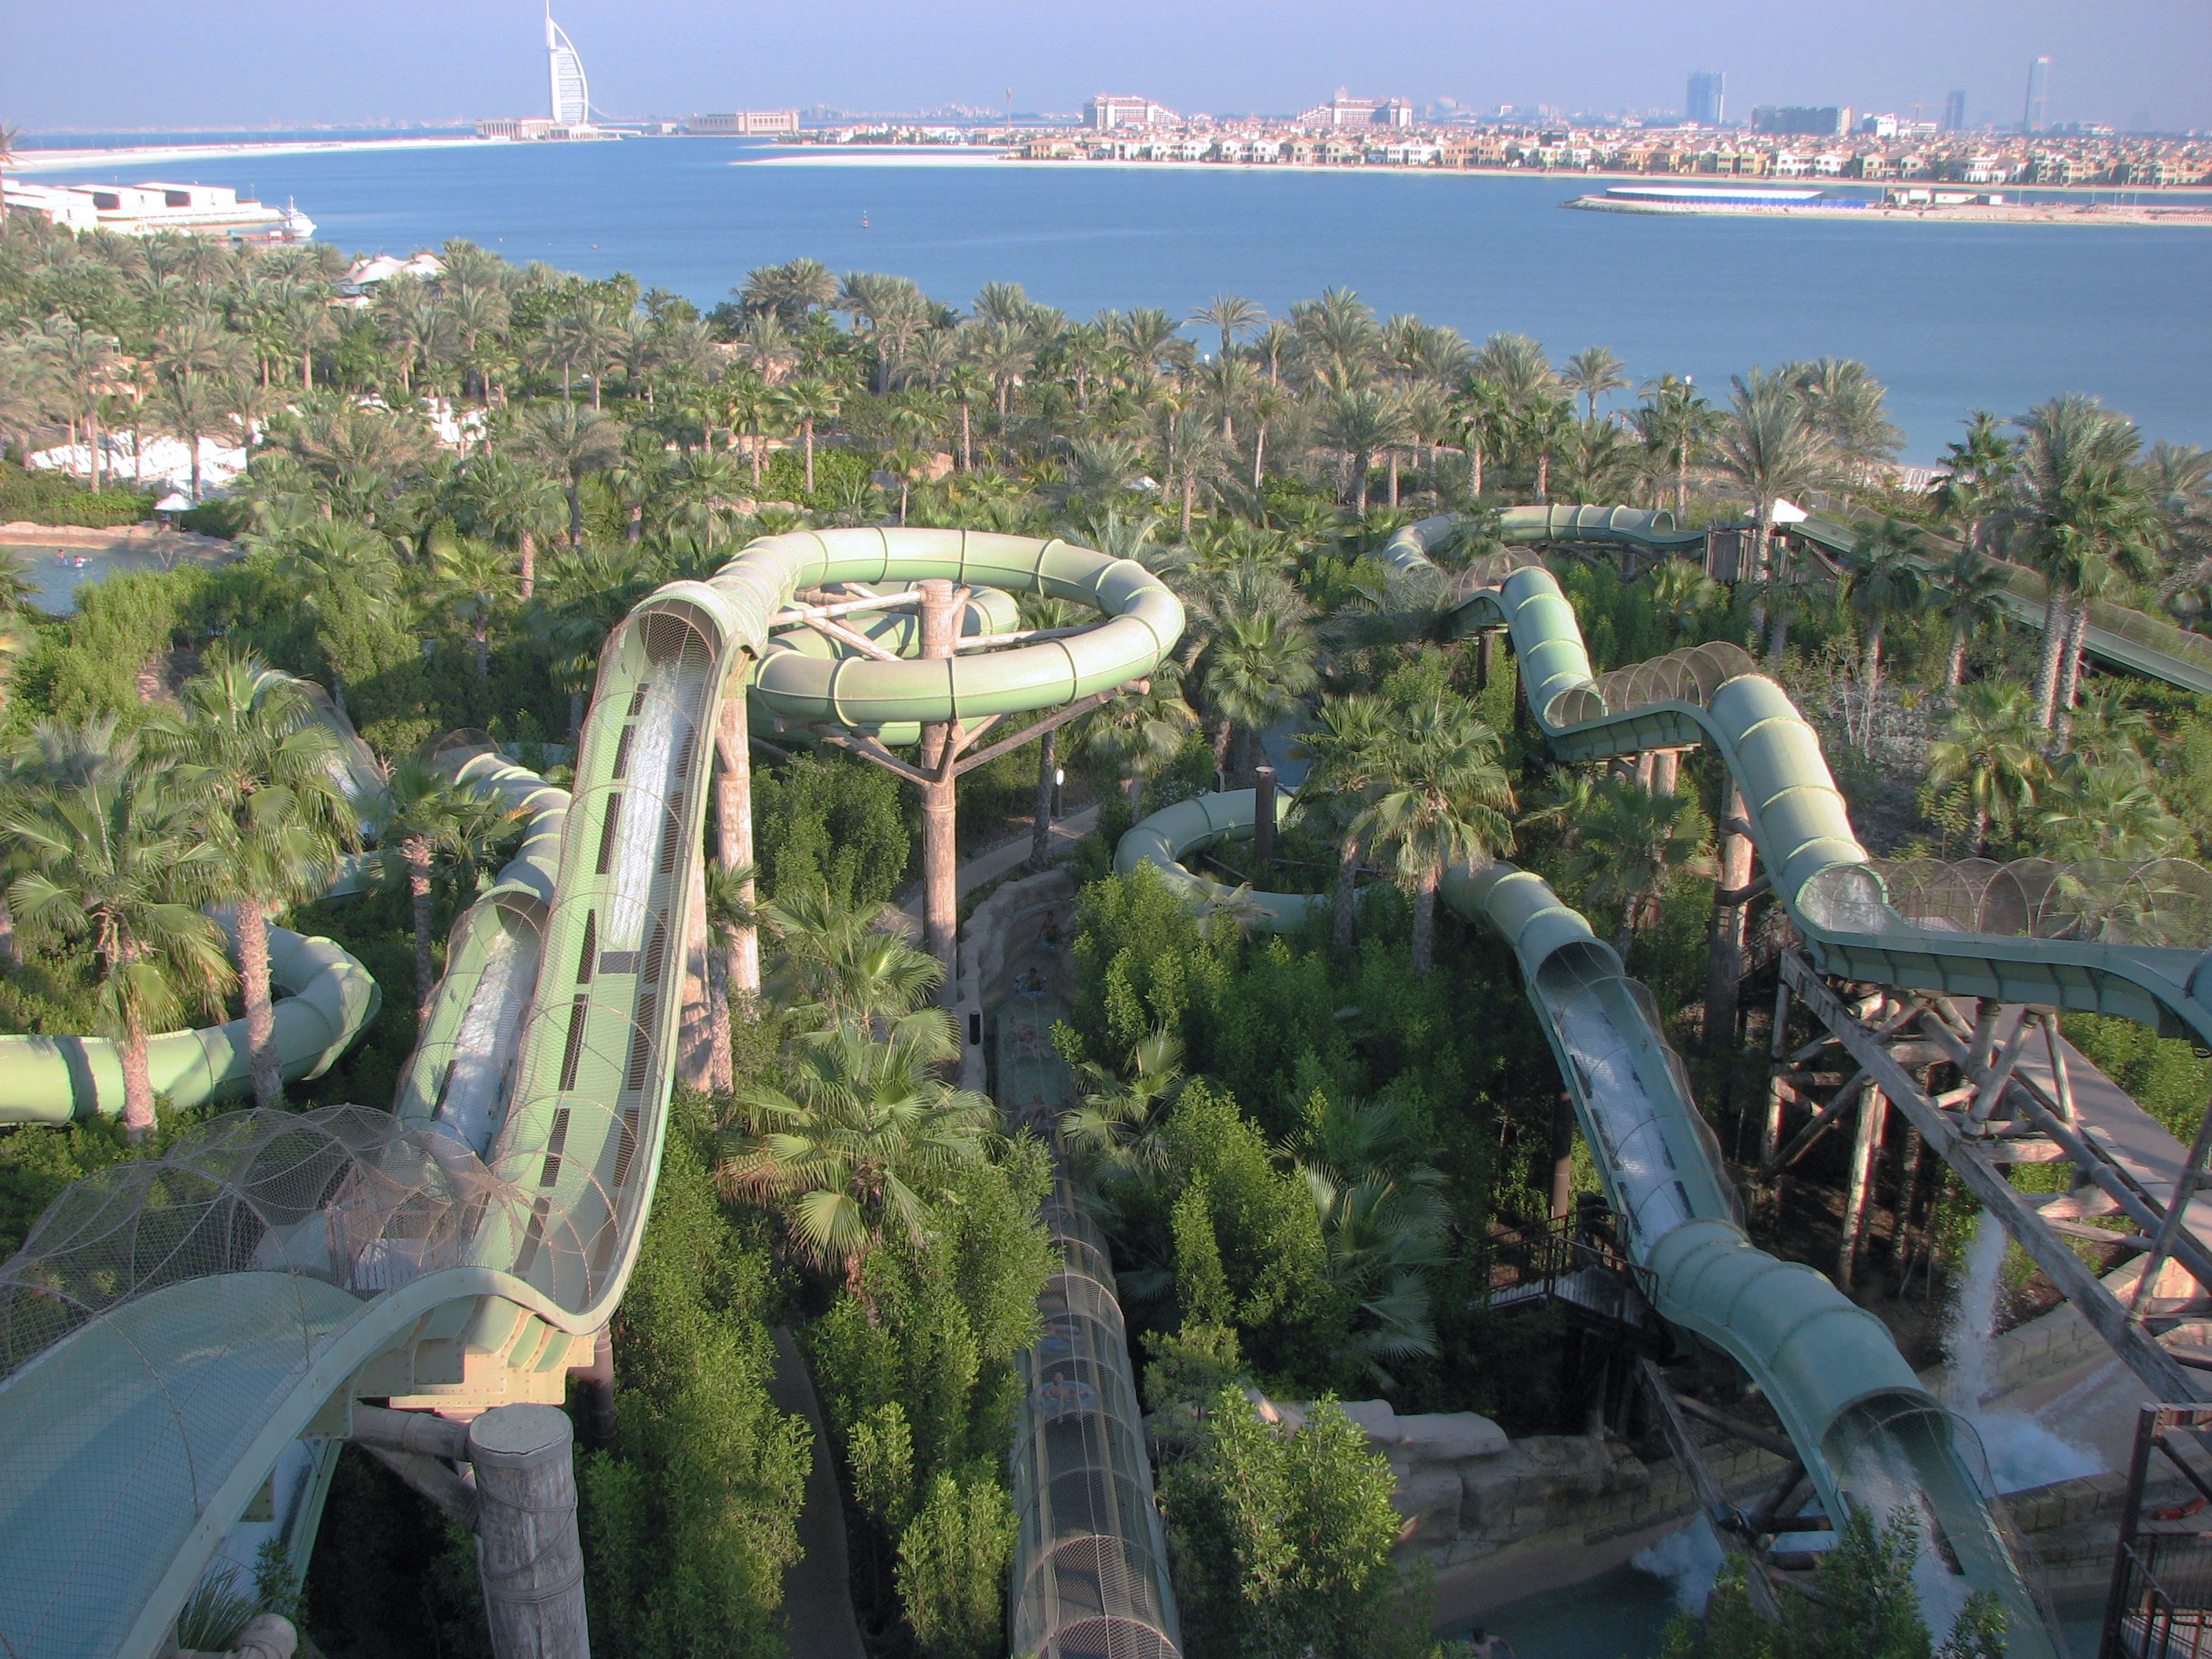 Công viên nước Aquaventure - Aquaventure Waterpark - Dubai - Các Tiểu Vương Quốc Ả Rập Thống Nhất